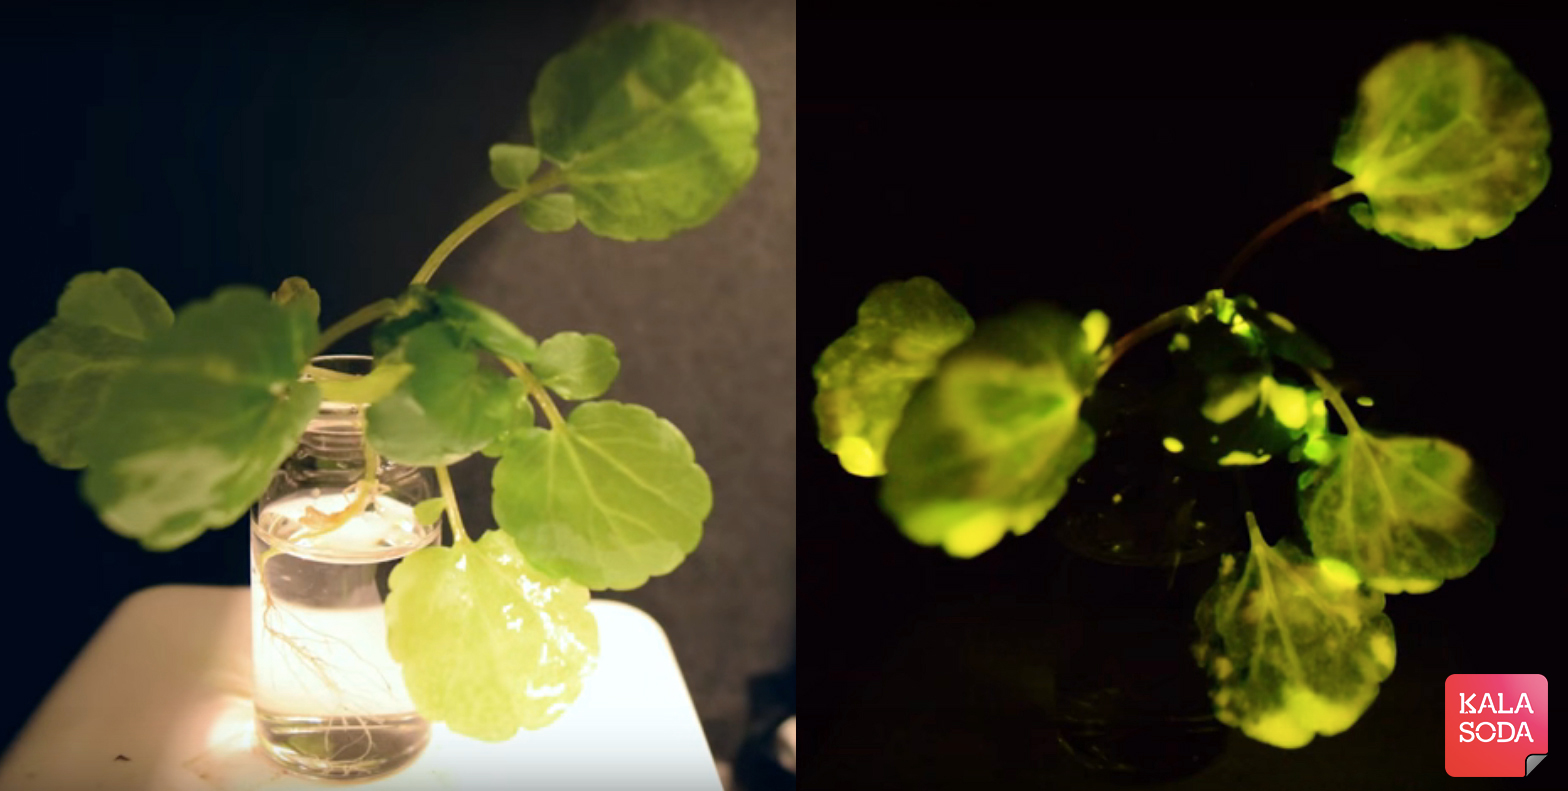 با گیاهان نورانی و هوشمند آشنا شوید|کالاسودا